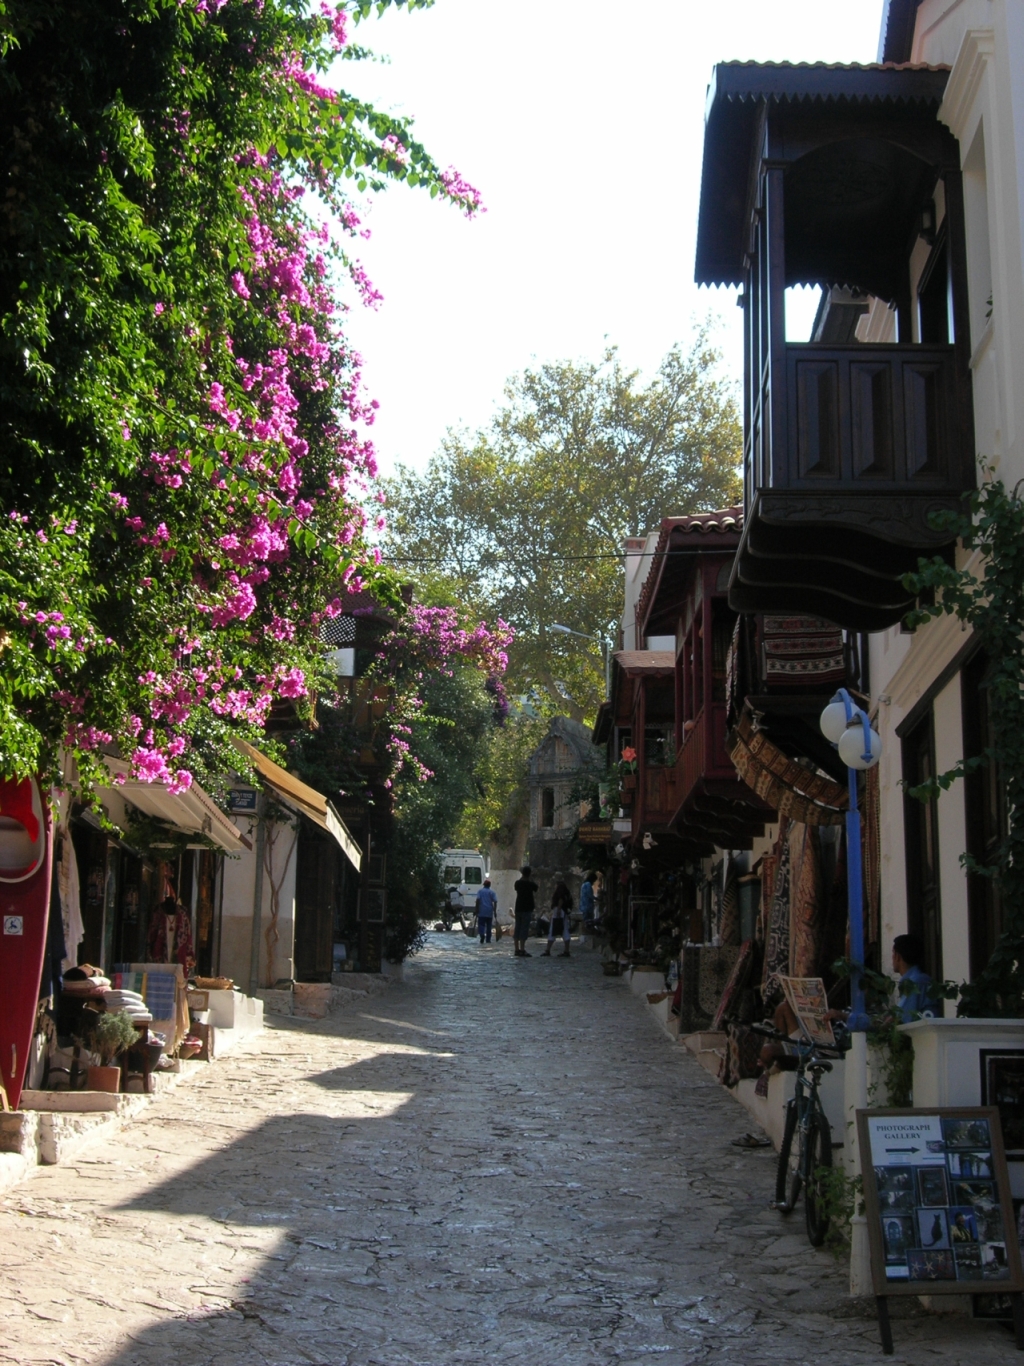 A street in Kas